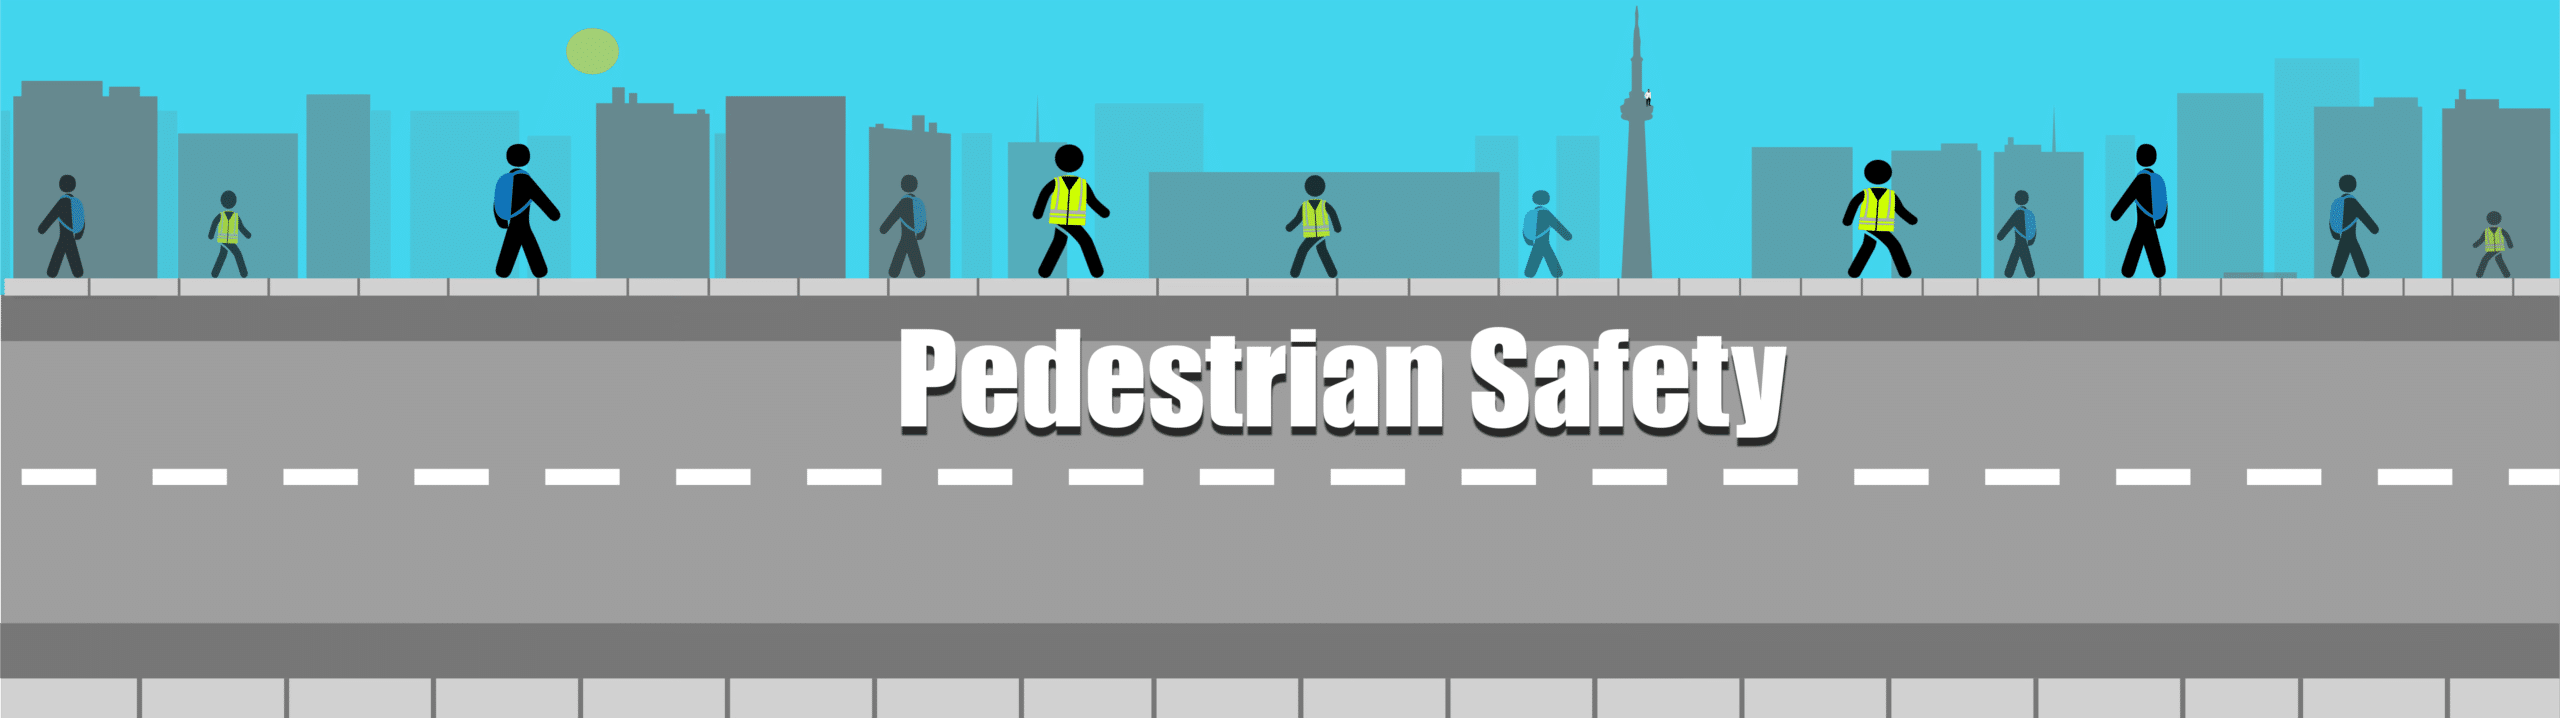 PedestrianSafety